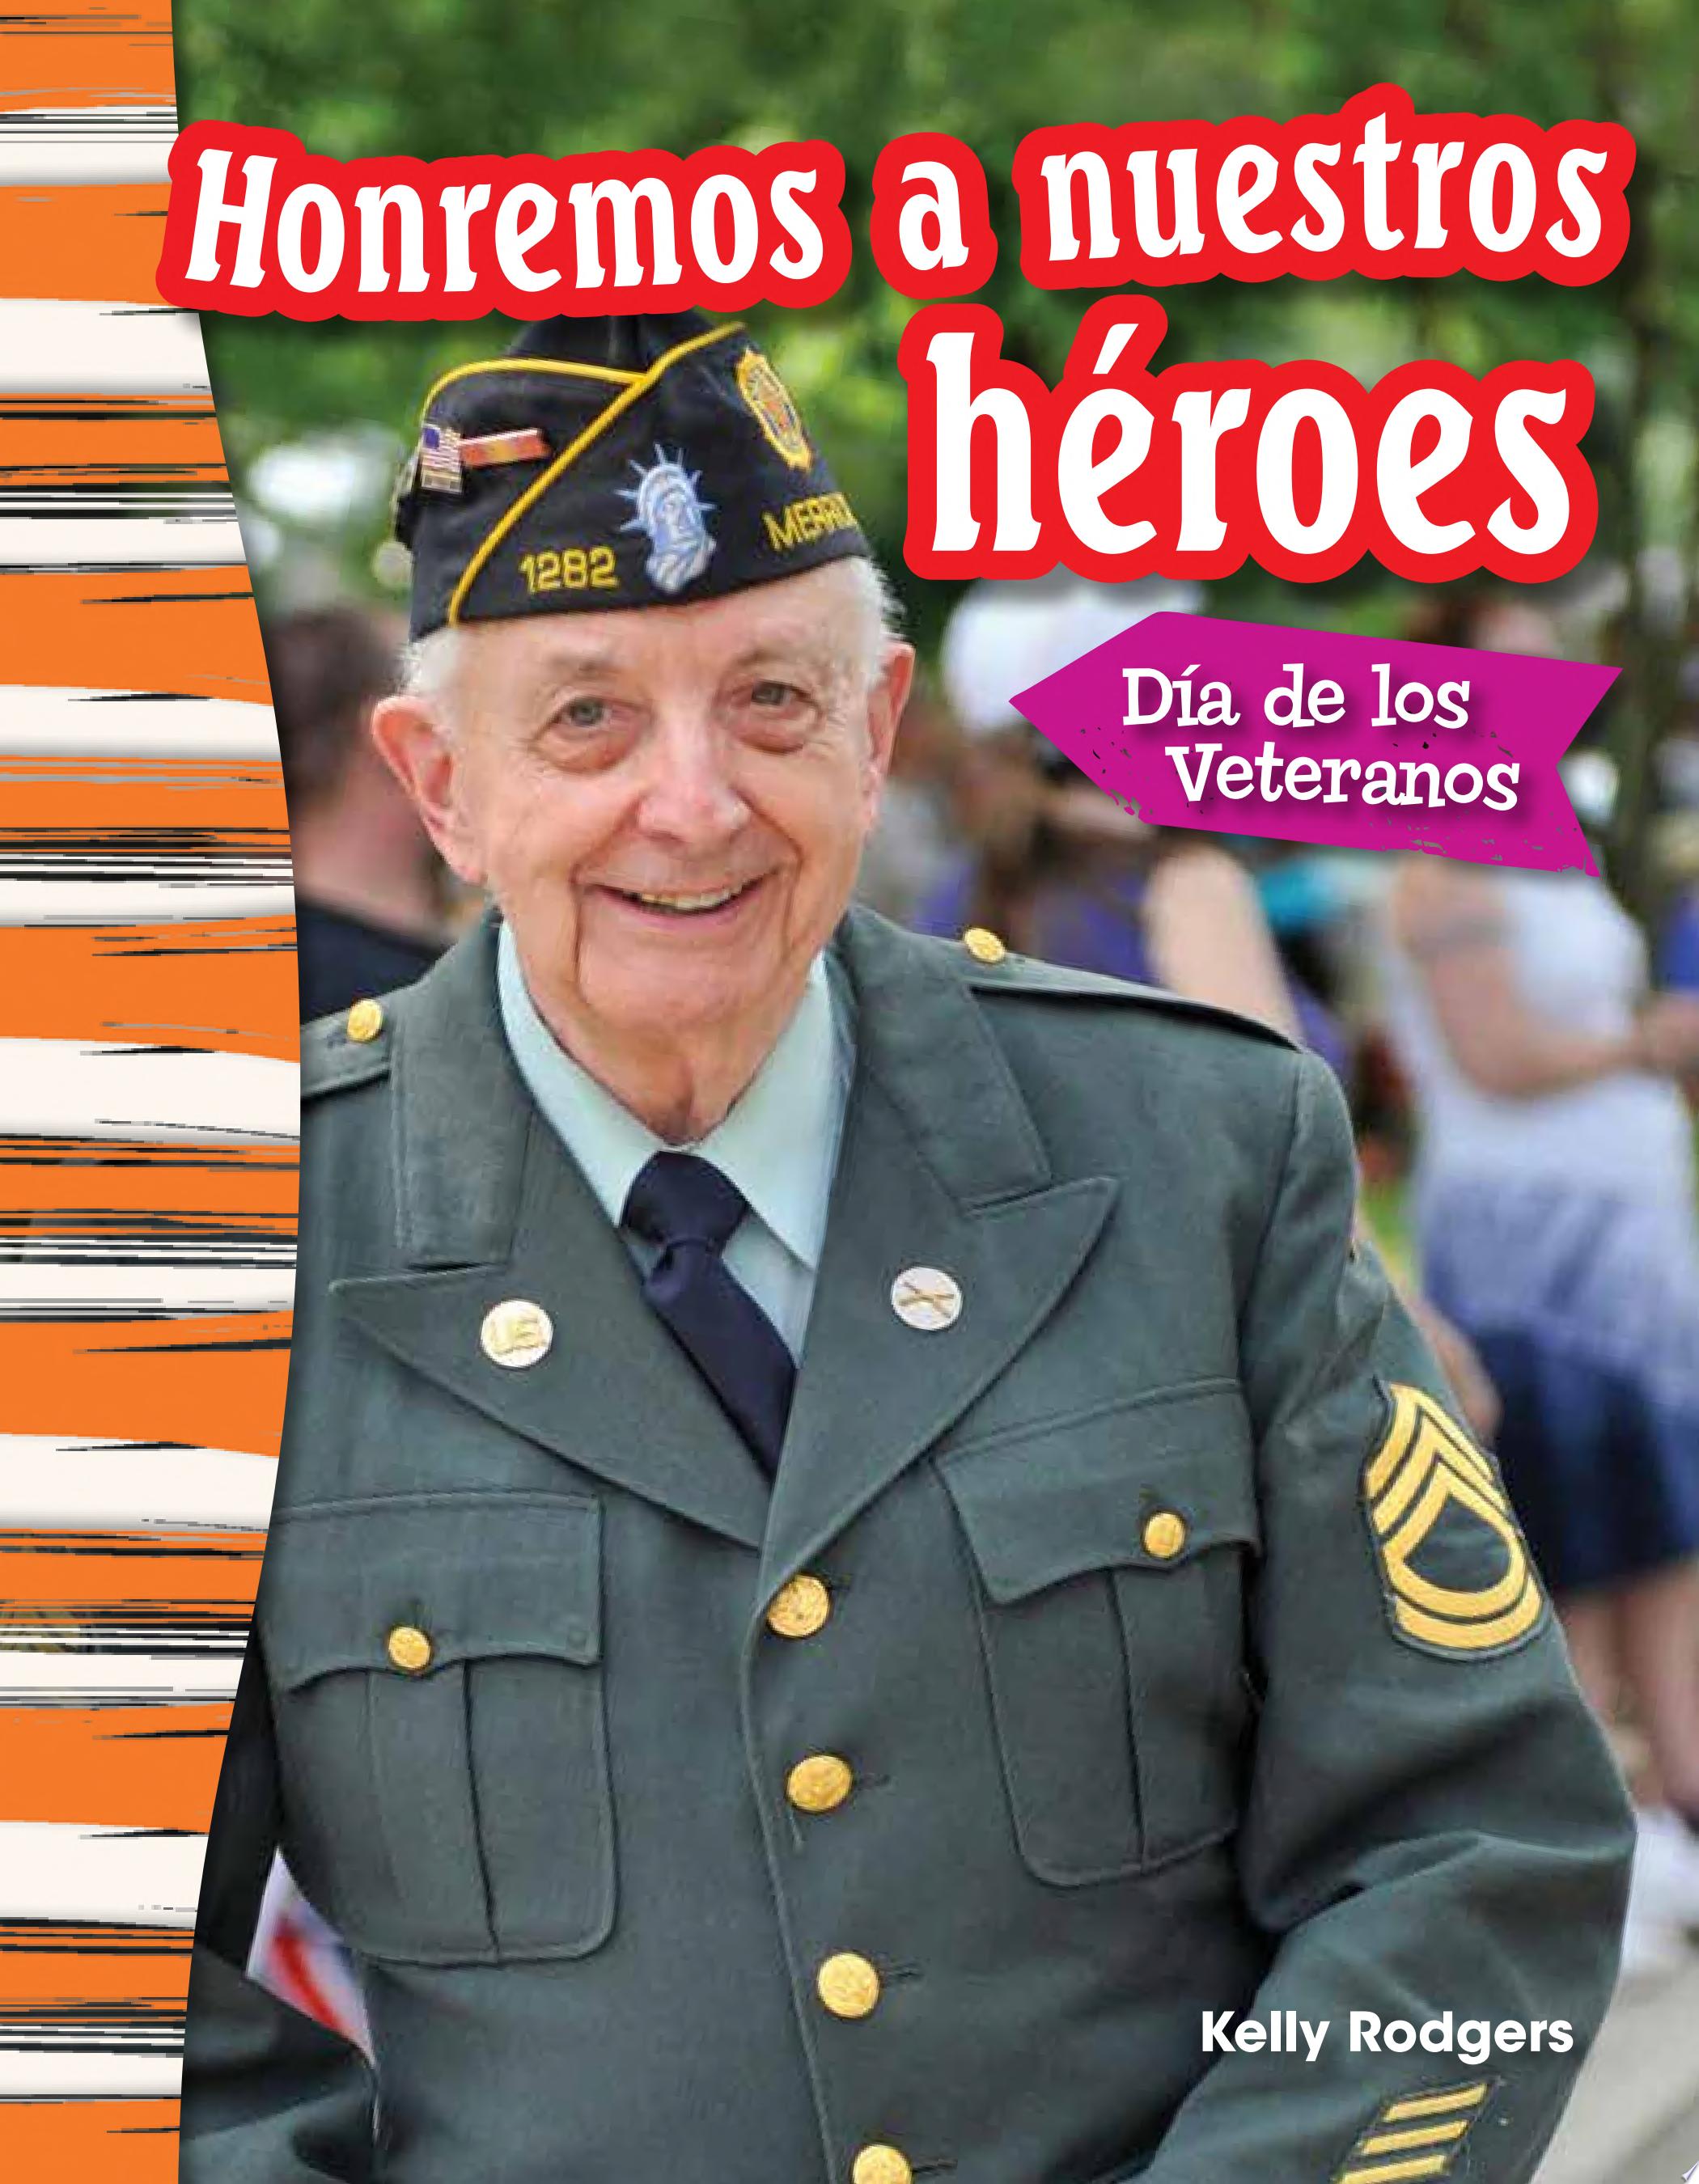 Image for "Honremos a nuestros héroes: Día de los Veteranos (Remembering Our Heroes: Veterans Day)"